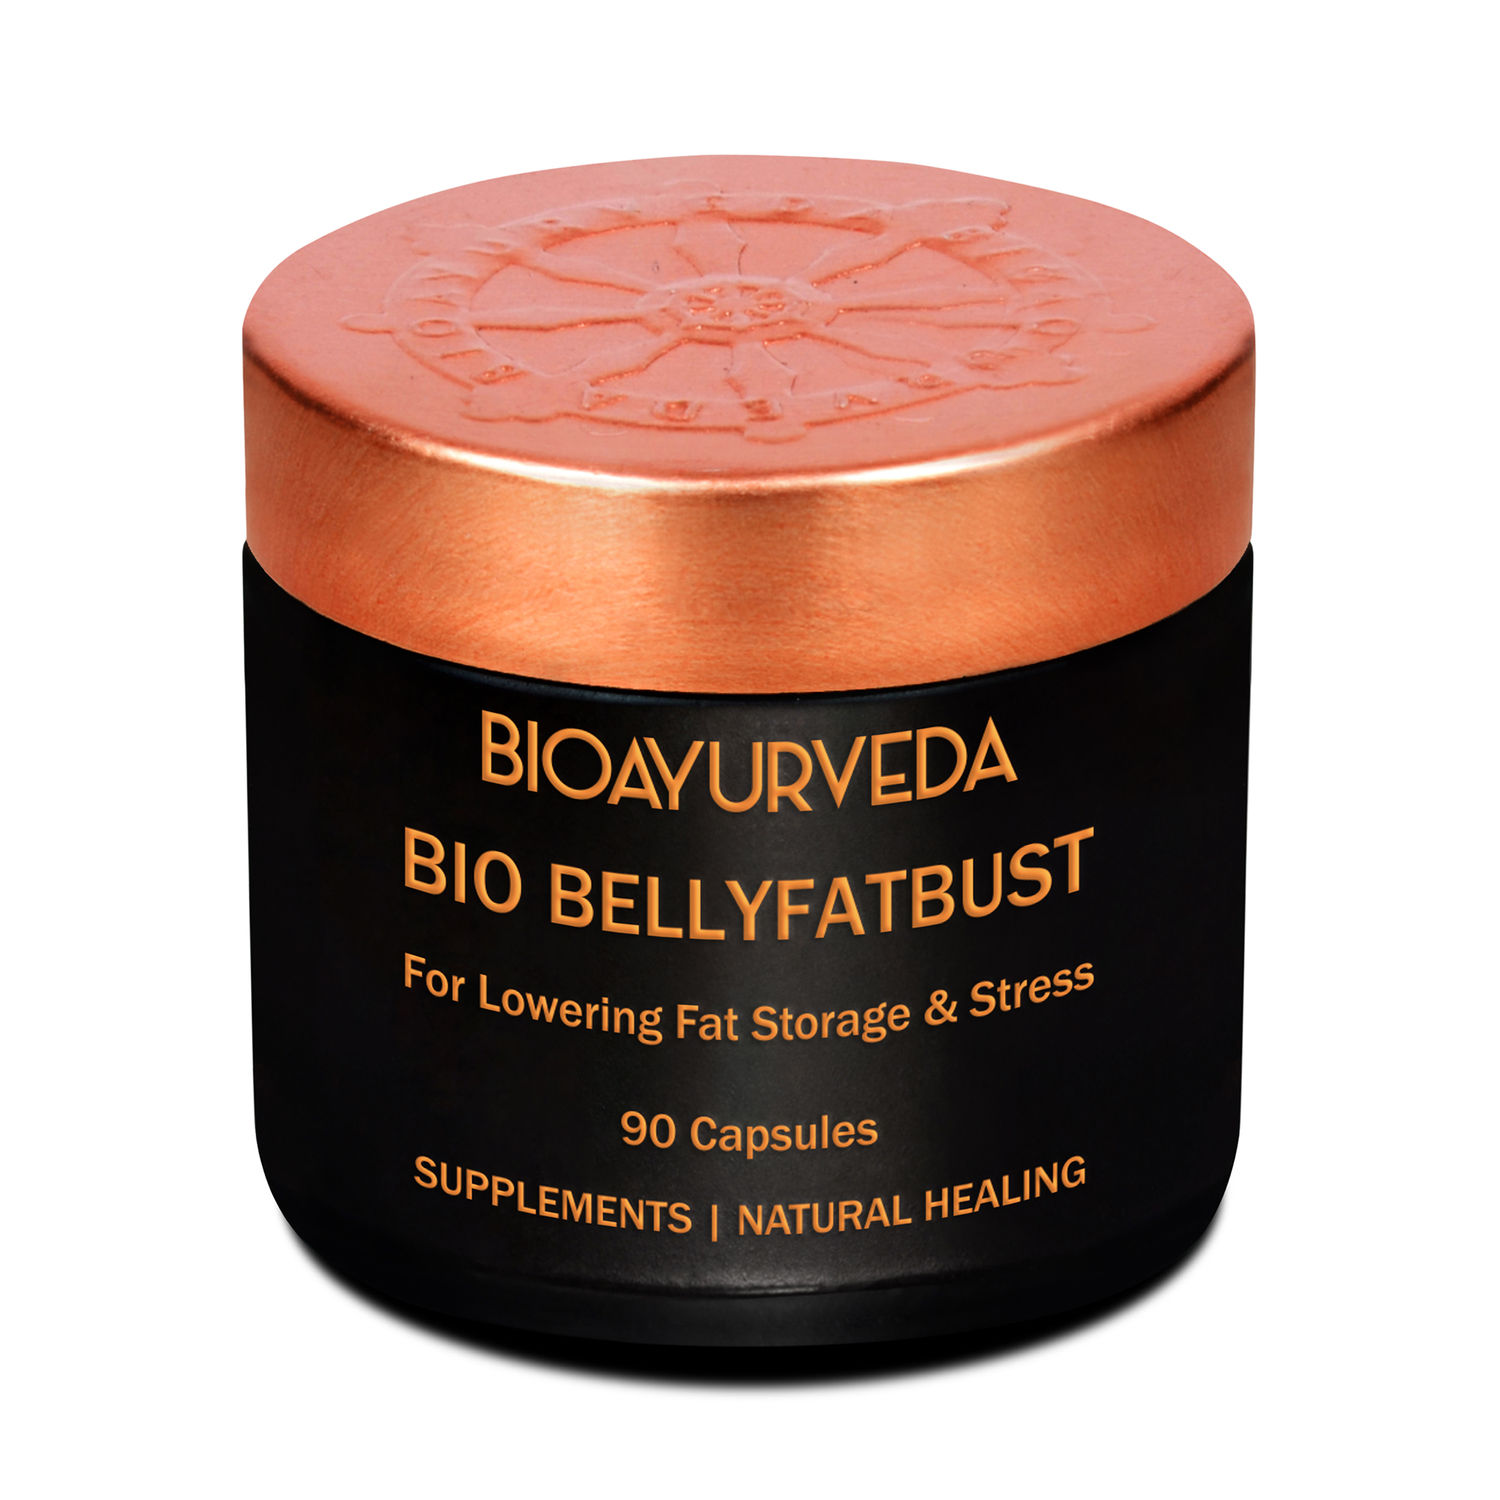 Buy BIOAYURVEDA Bio Belly fat Bust capsule 90 Capsule - Purplle